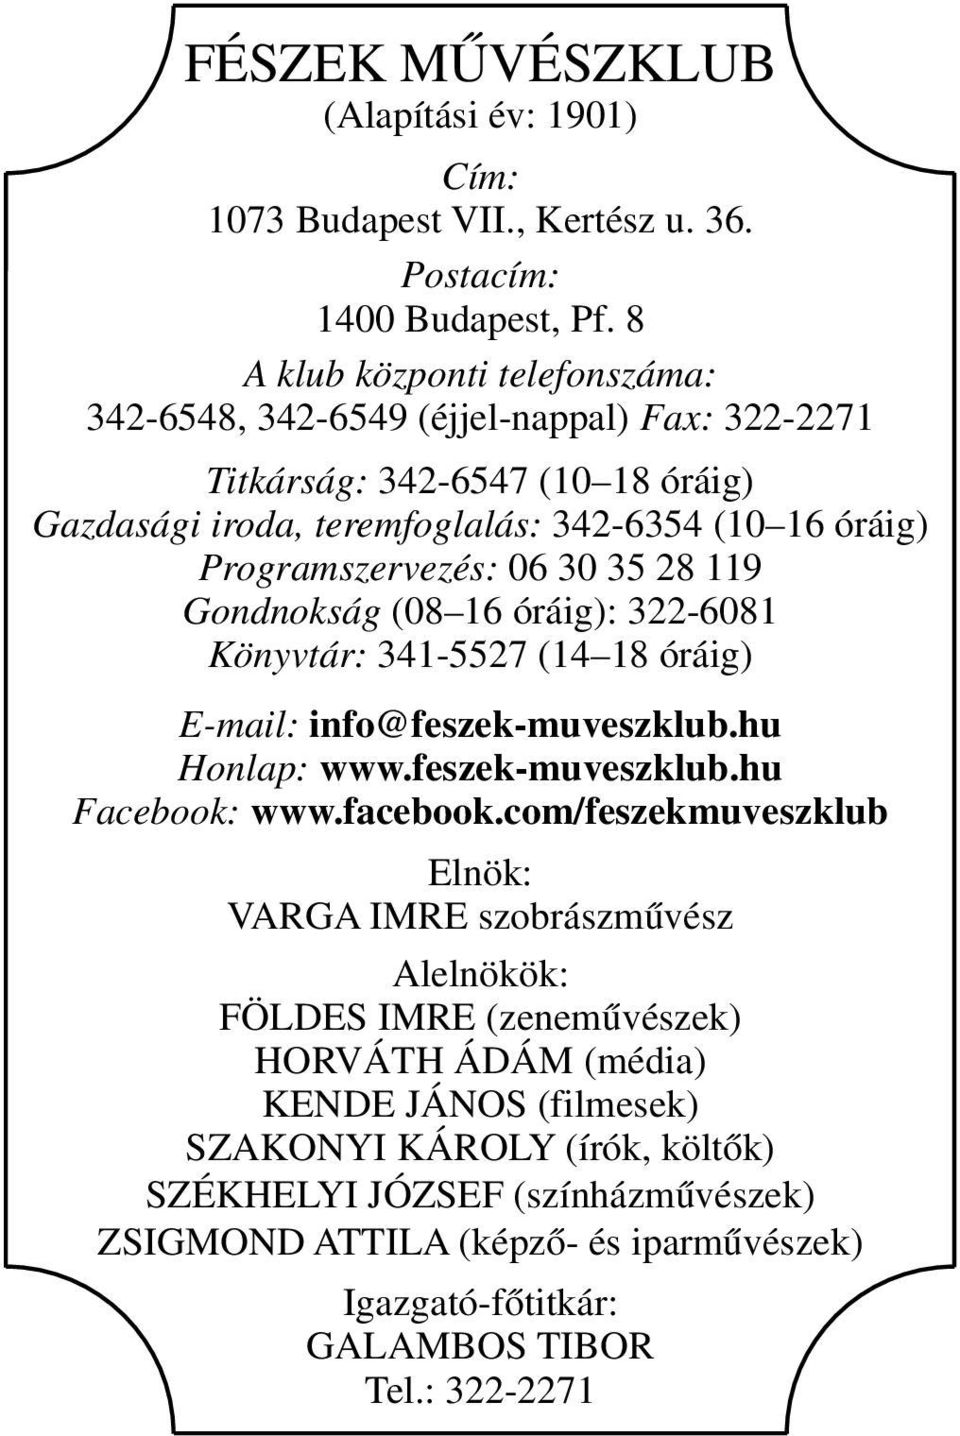 30 35 28 119 Gondnokság (08 16 óráig): 322-6081 Könyvtár: 341-5527 (14 18 óráig) E-mail: info@feszek-muveszklub.hu Honlap: www.feszek-muveszklub.hu Facebook: www.facebook.